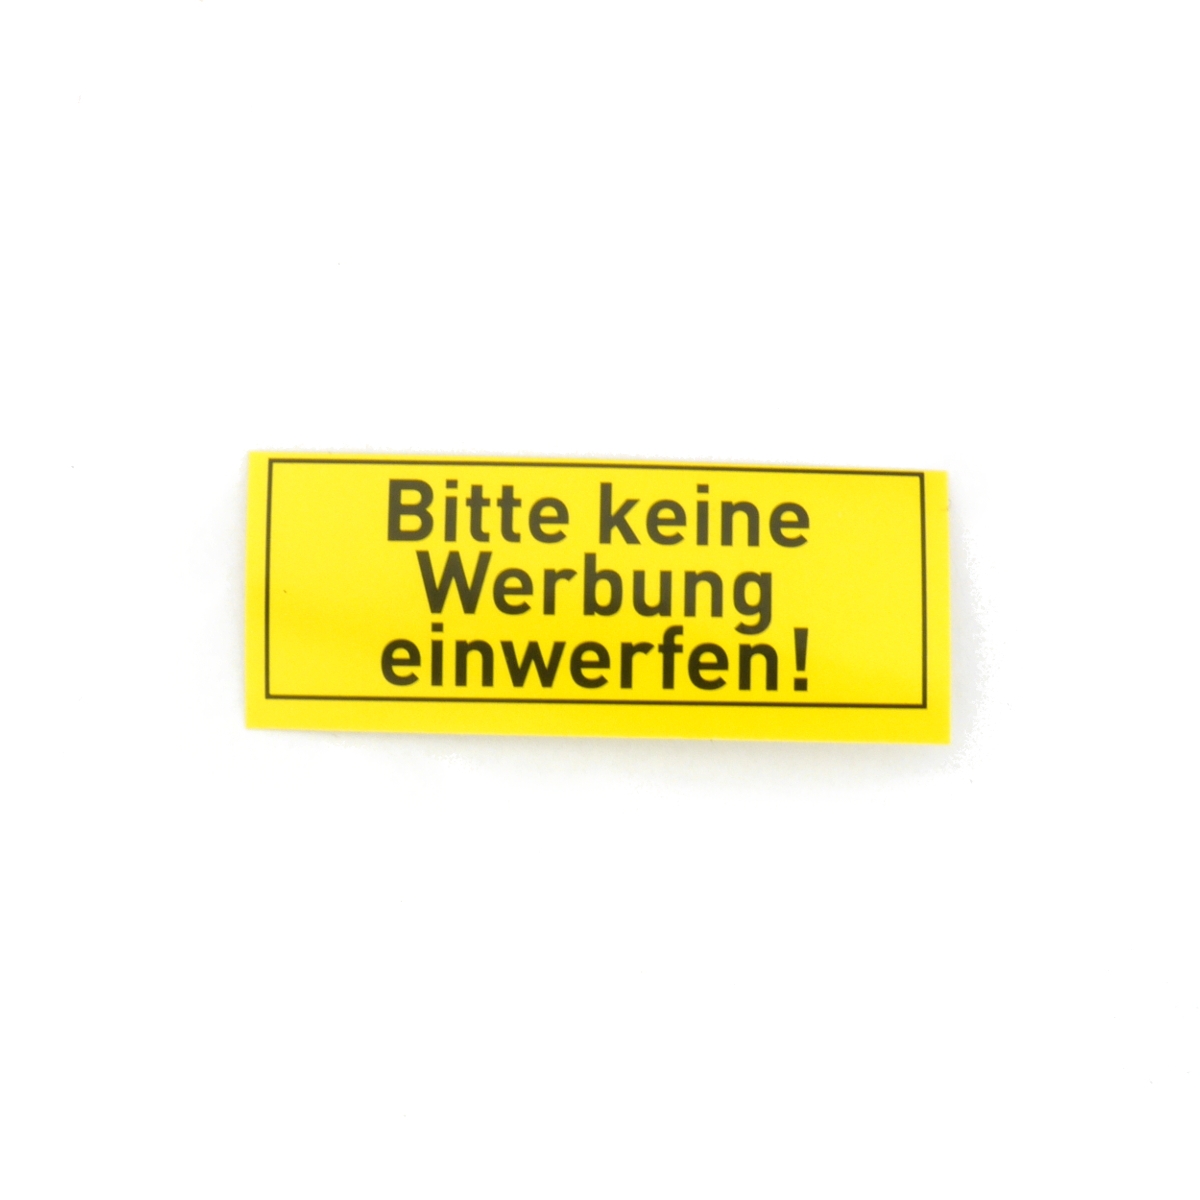 ► Briefkastenaufkleber BITTE KEINE WERBUNG EINWERFEN ca. 50x20mm